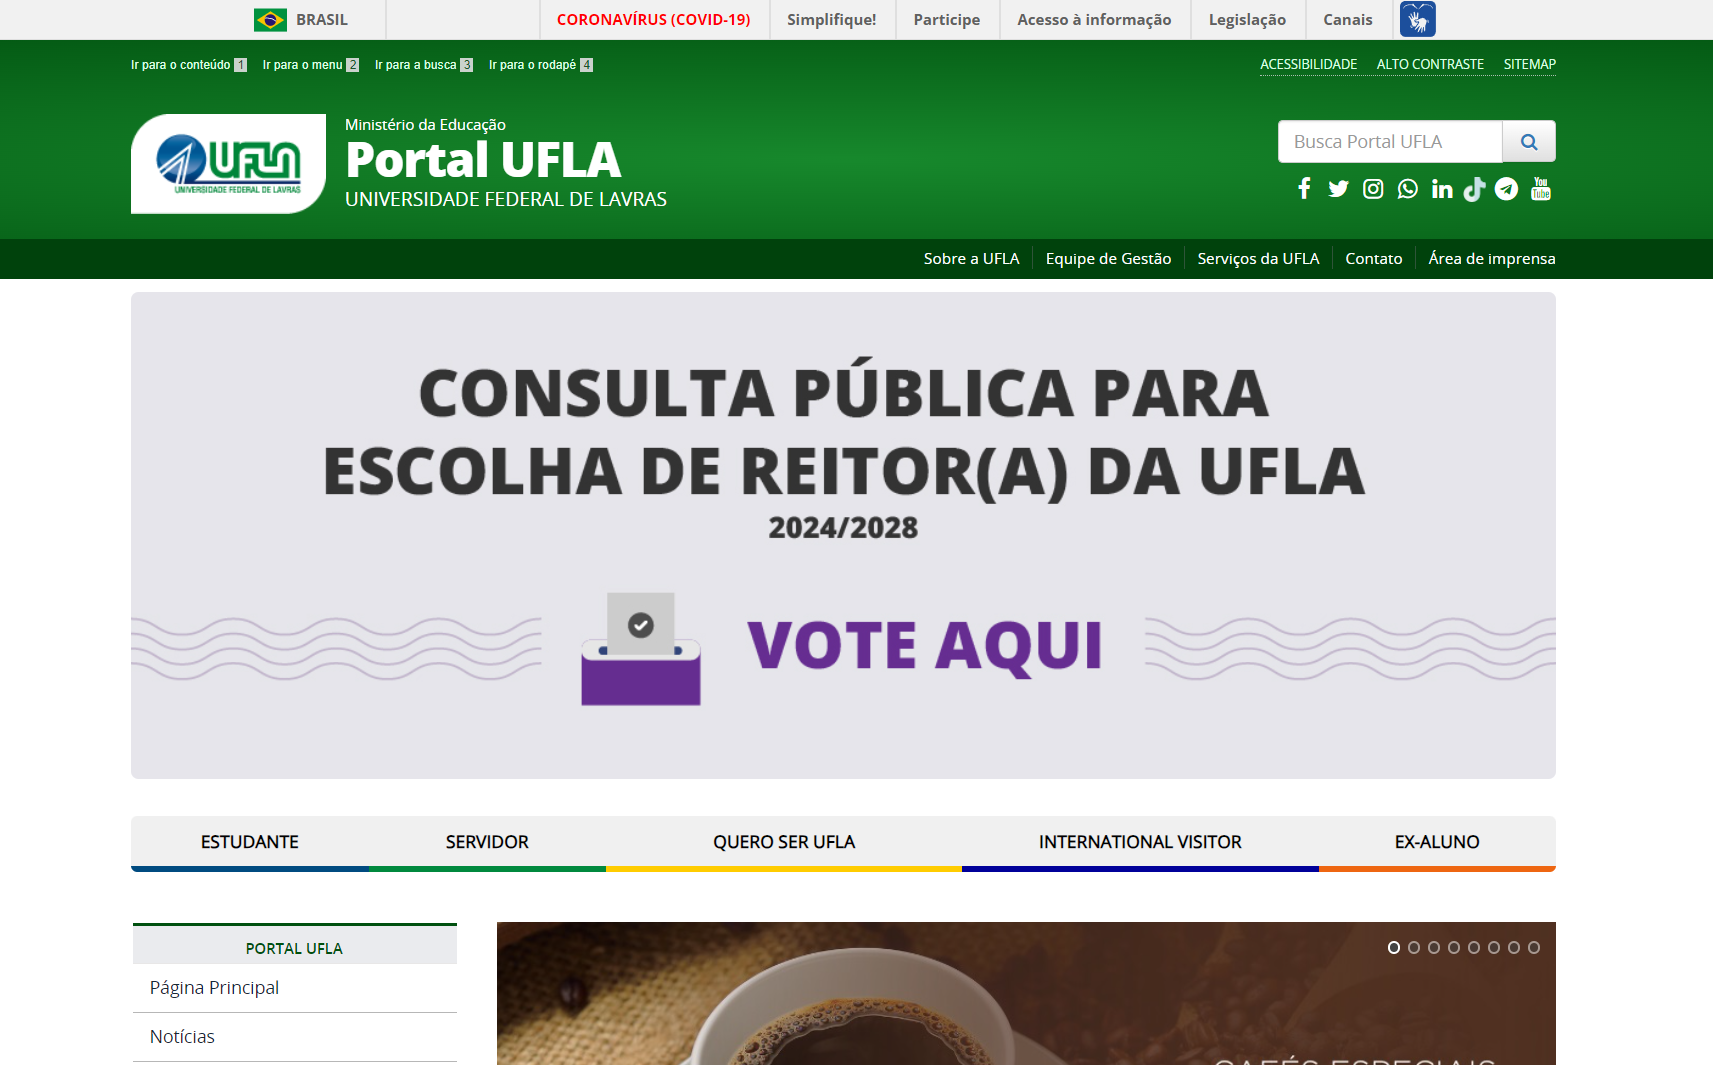 Imagem do Portal UFLA com o banner de votação.